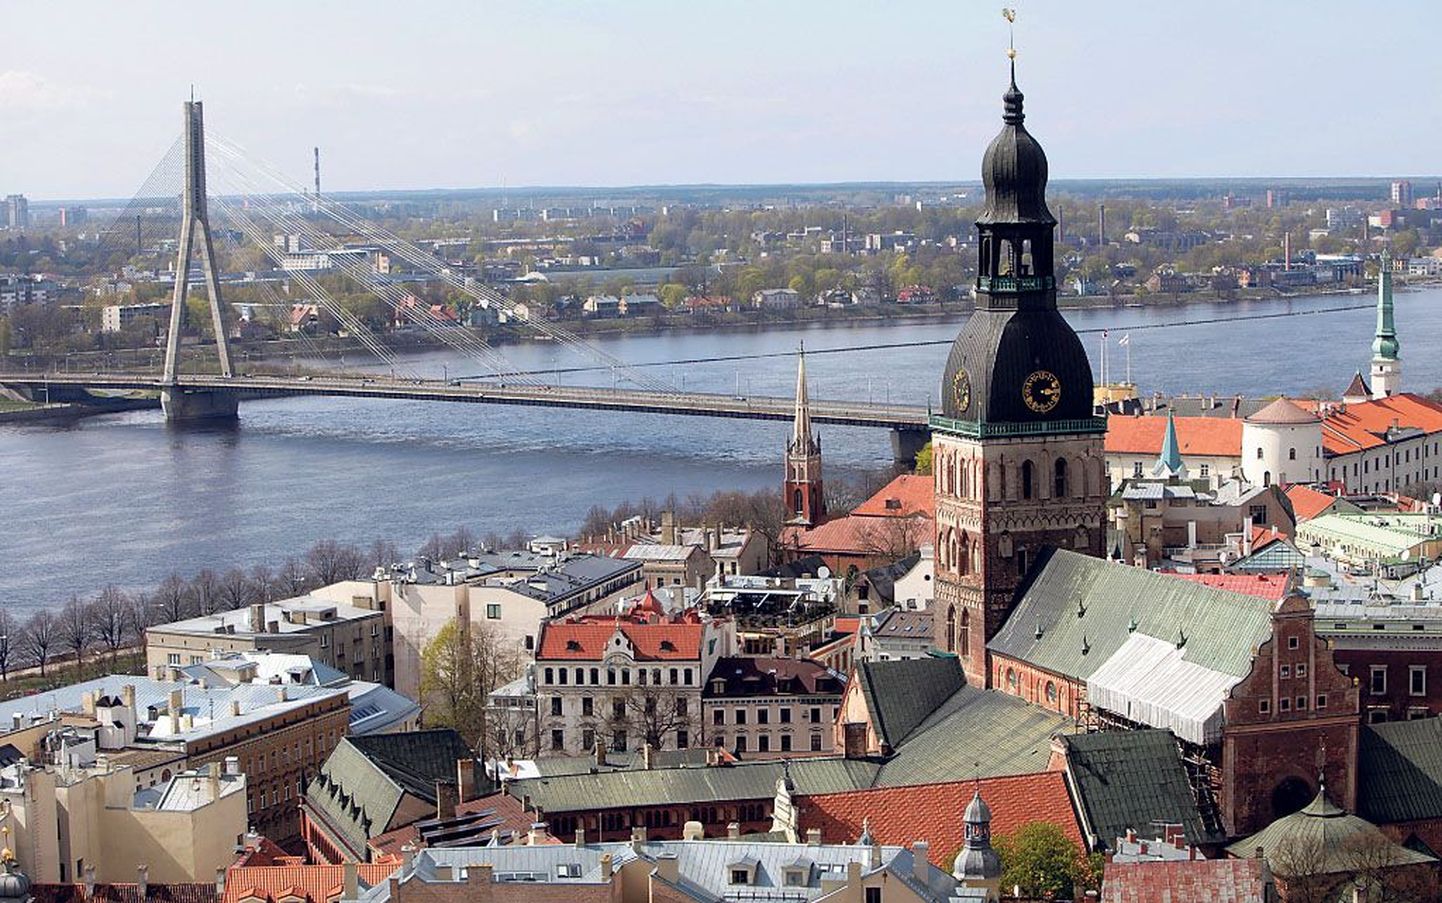 Lätil veab: 2014. aastal on Riia Euroopa kultuuripealinn ning 2015. aastal võtavad meie lõunanaabrid pooleks aastaks üle Euroopa Liidu juhtimise. Mõlemal aastal peaks ajakirjandusel jaguma tähelepanu lätlaste tegemistele.